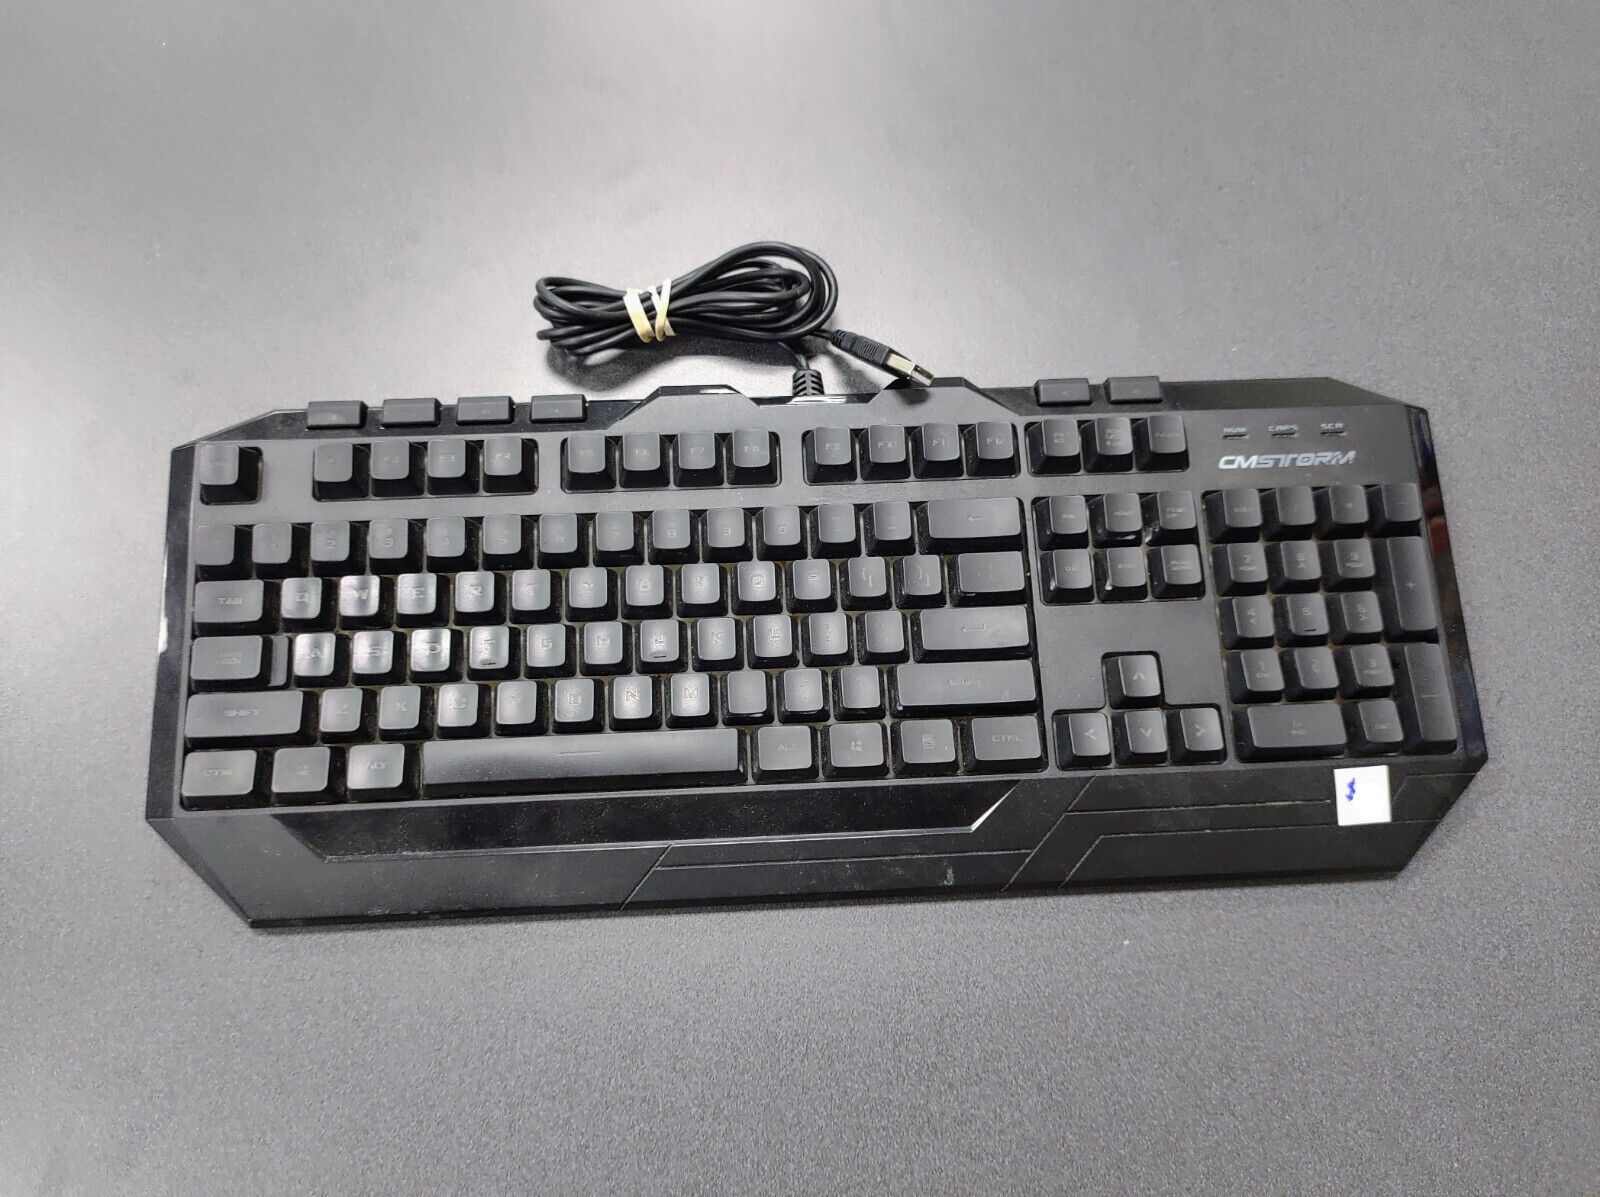 Cooler Master Devastator Keyboard Model SGB-3011-KKMF1 RGB Wired Tested Works